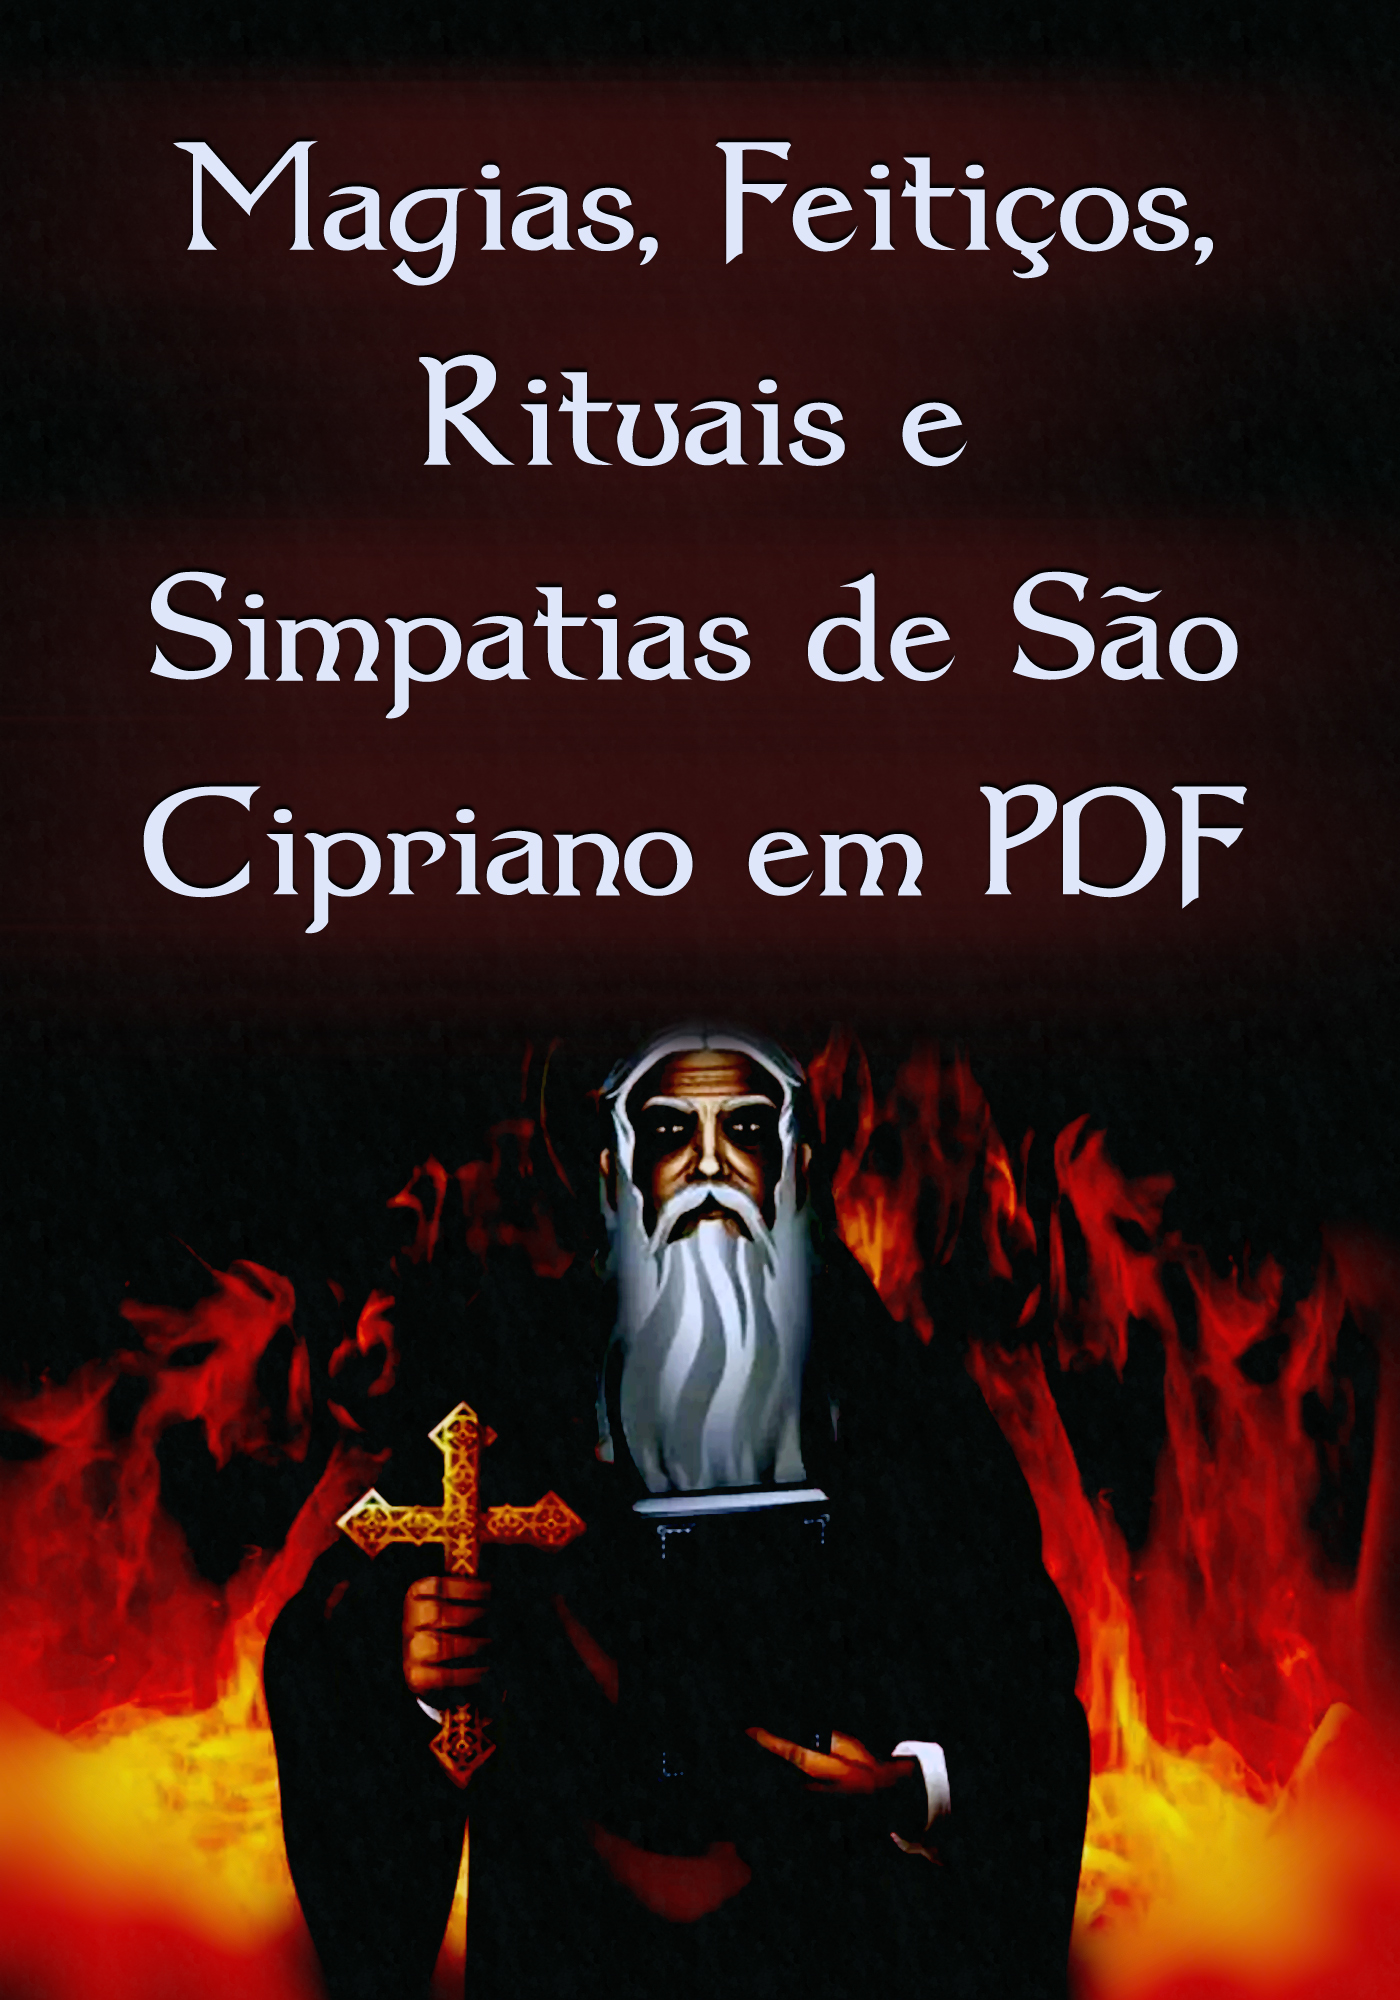 Magias, Feitiços, Rituais e Simpatias de São Cipriano em PDF